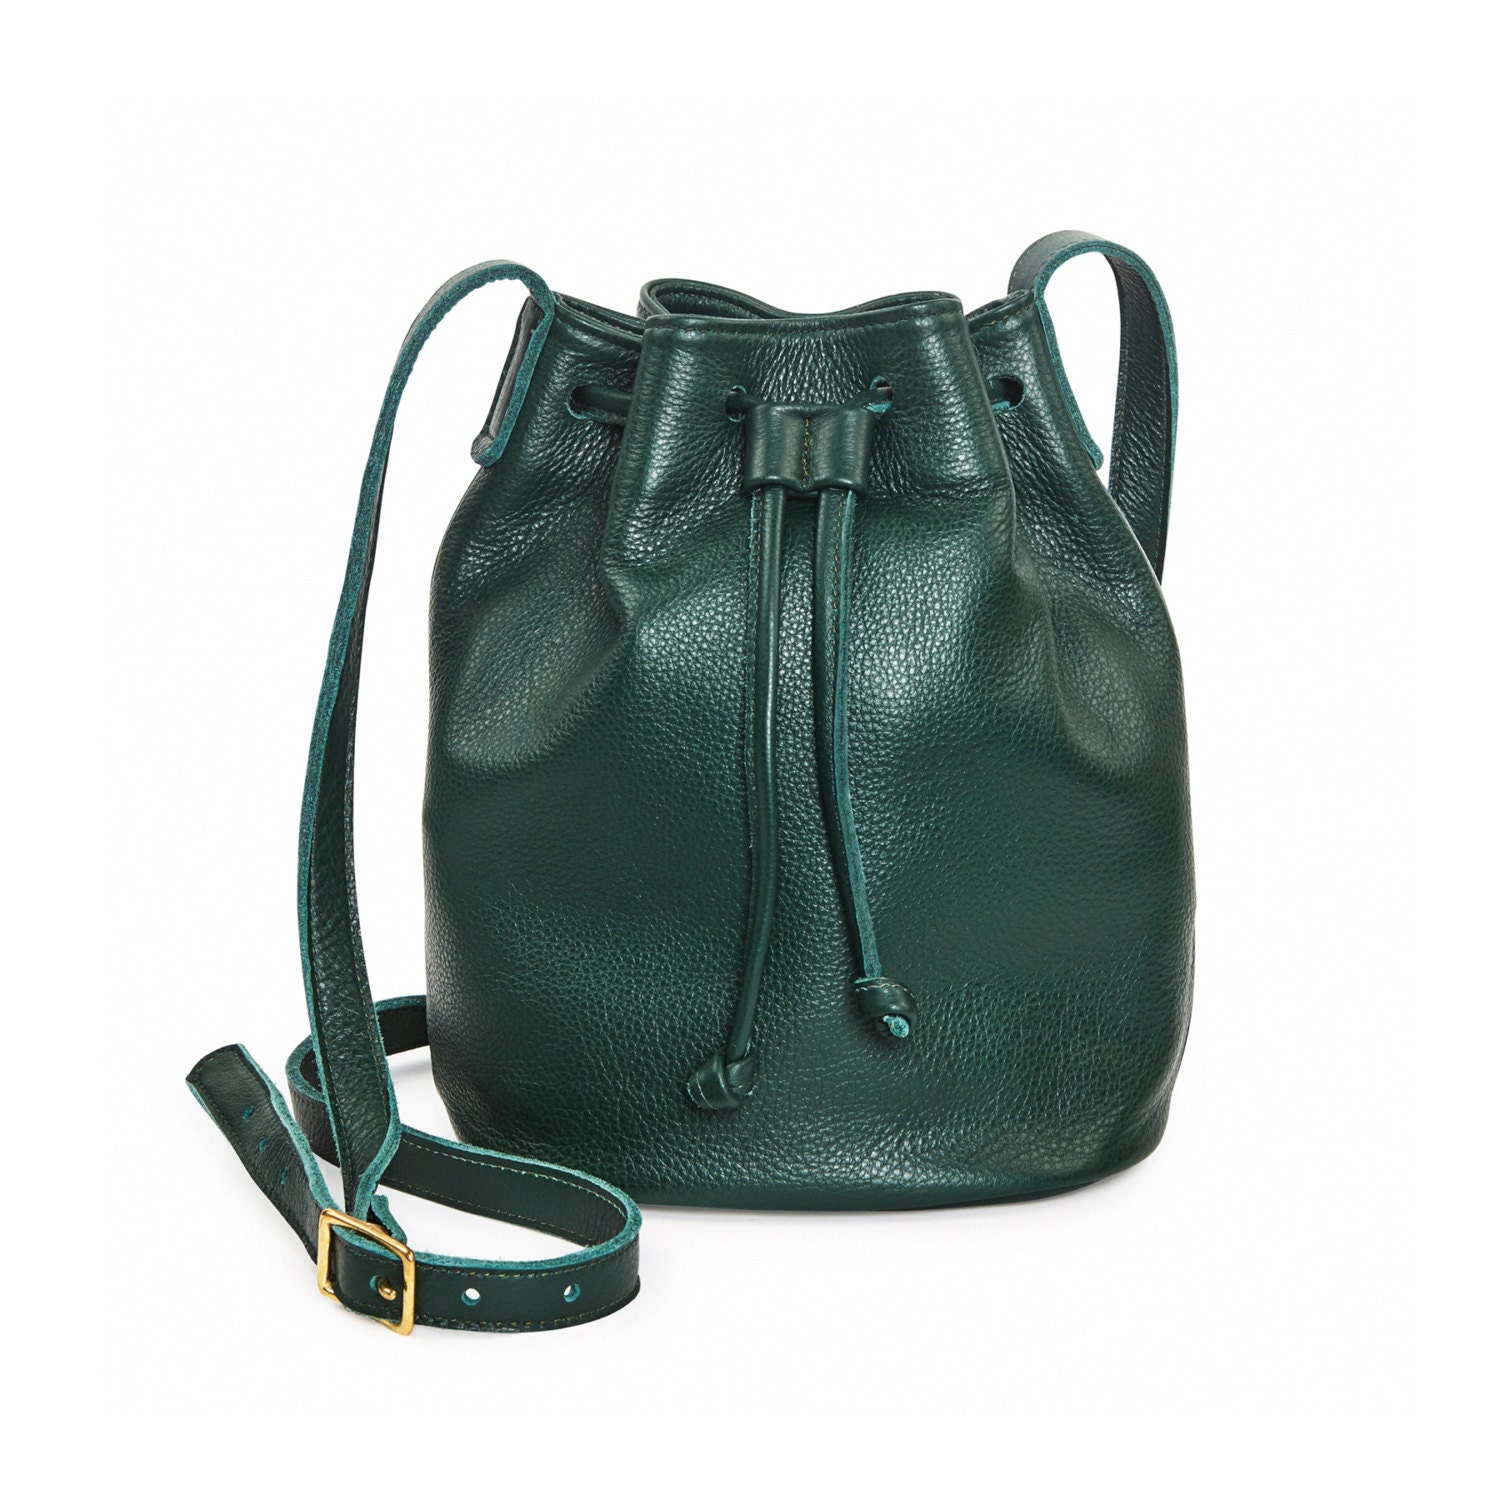 Forest green leather bucket bag leather handbag by LeahLerner